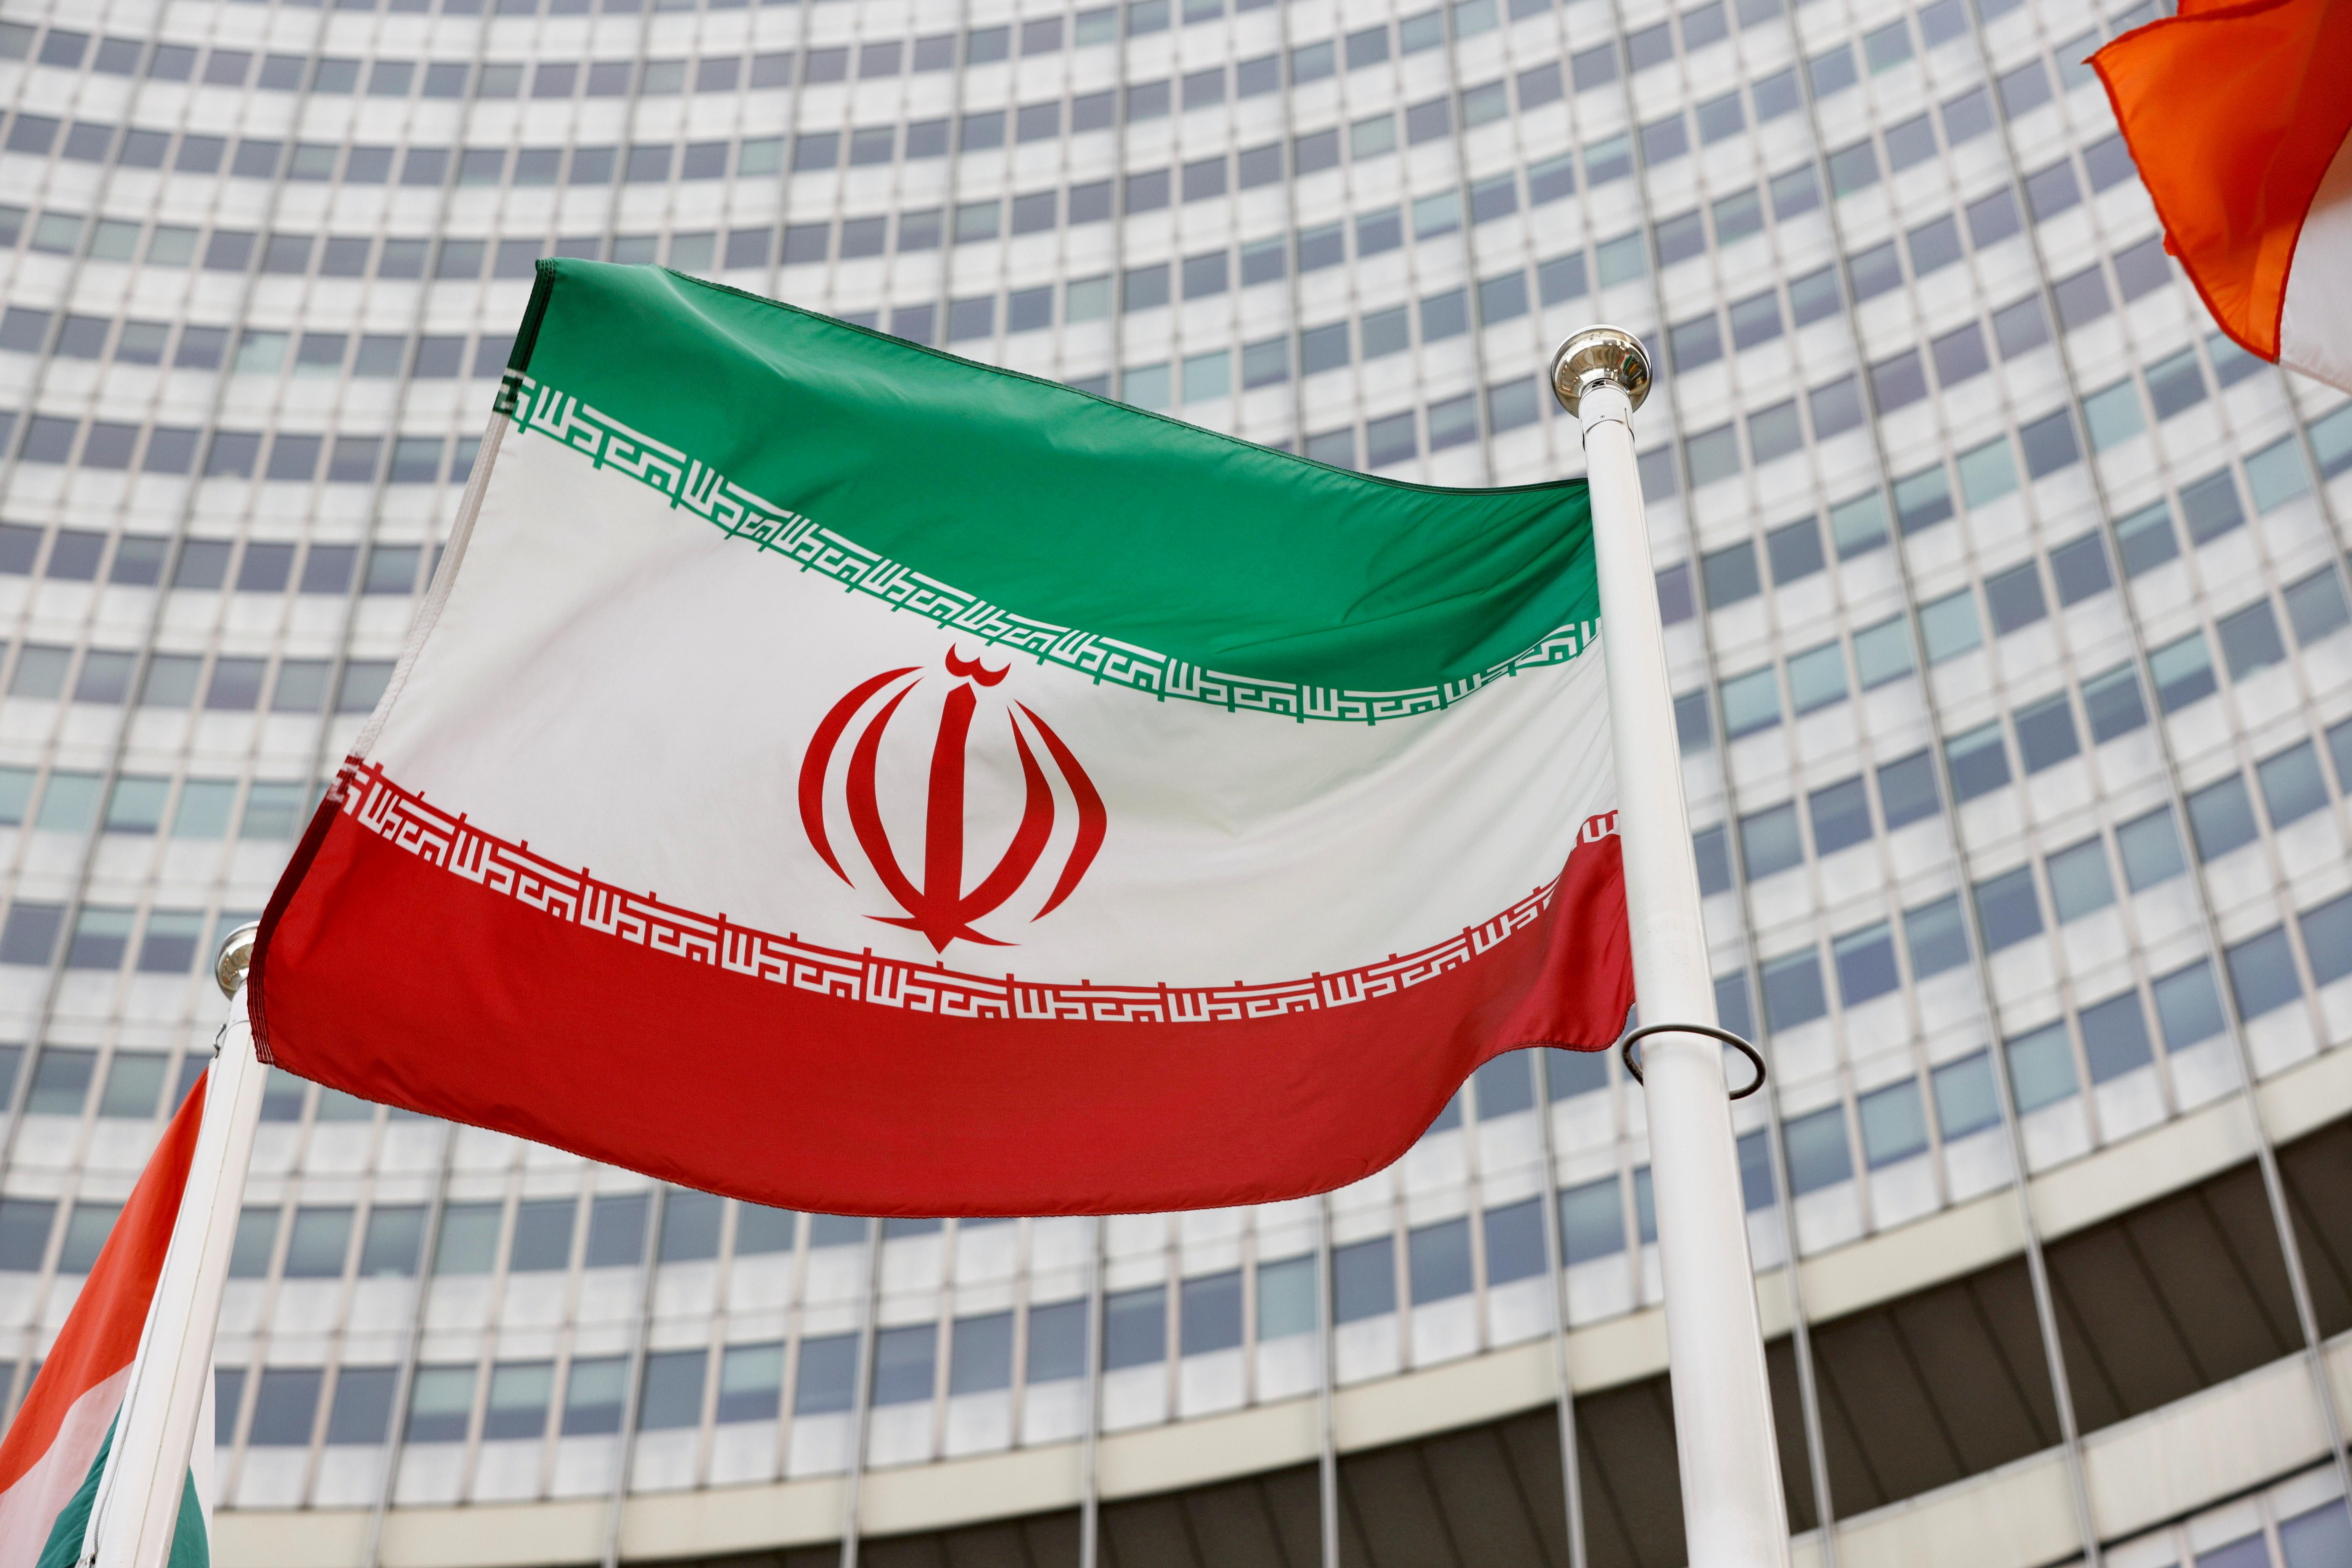 Lệnh trừng phạt Iran: Việc chấm dứt lệnh trừng phạt Iran đánh dấu một bước tiến trong quan hệ đối ngoại của Iran với thế giới. Hình ảnh này sẽ hỗ trợ cho những nỗ lực của Iran trong việc xóa bỏ các trở ngại kinh tế và phát triển quốc gia.